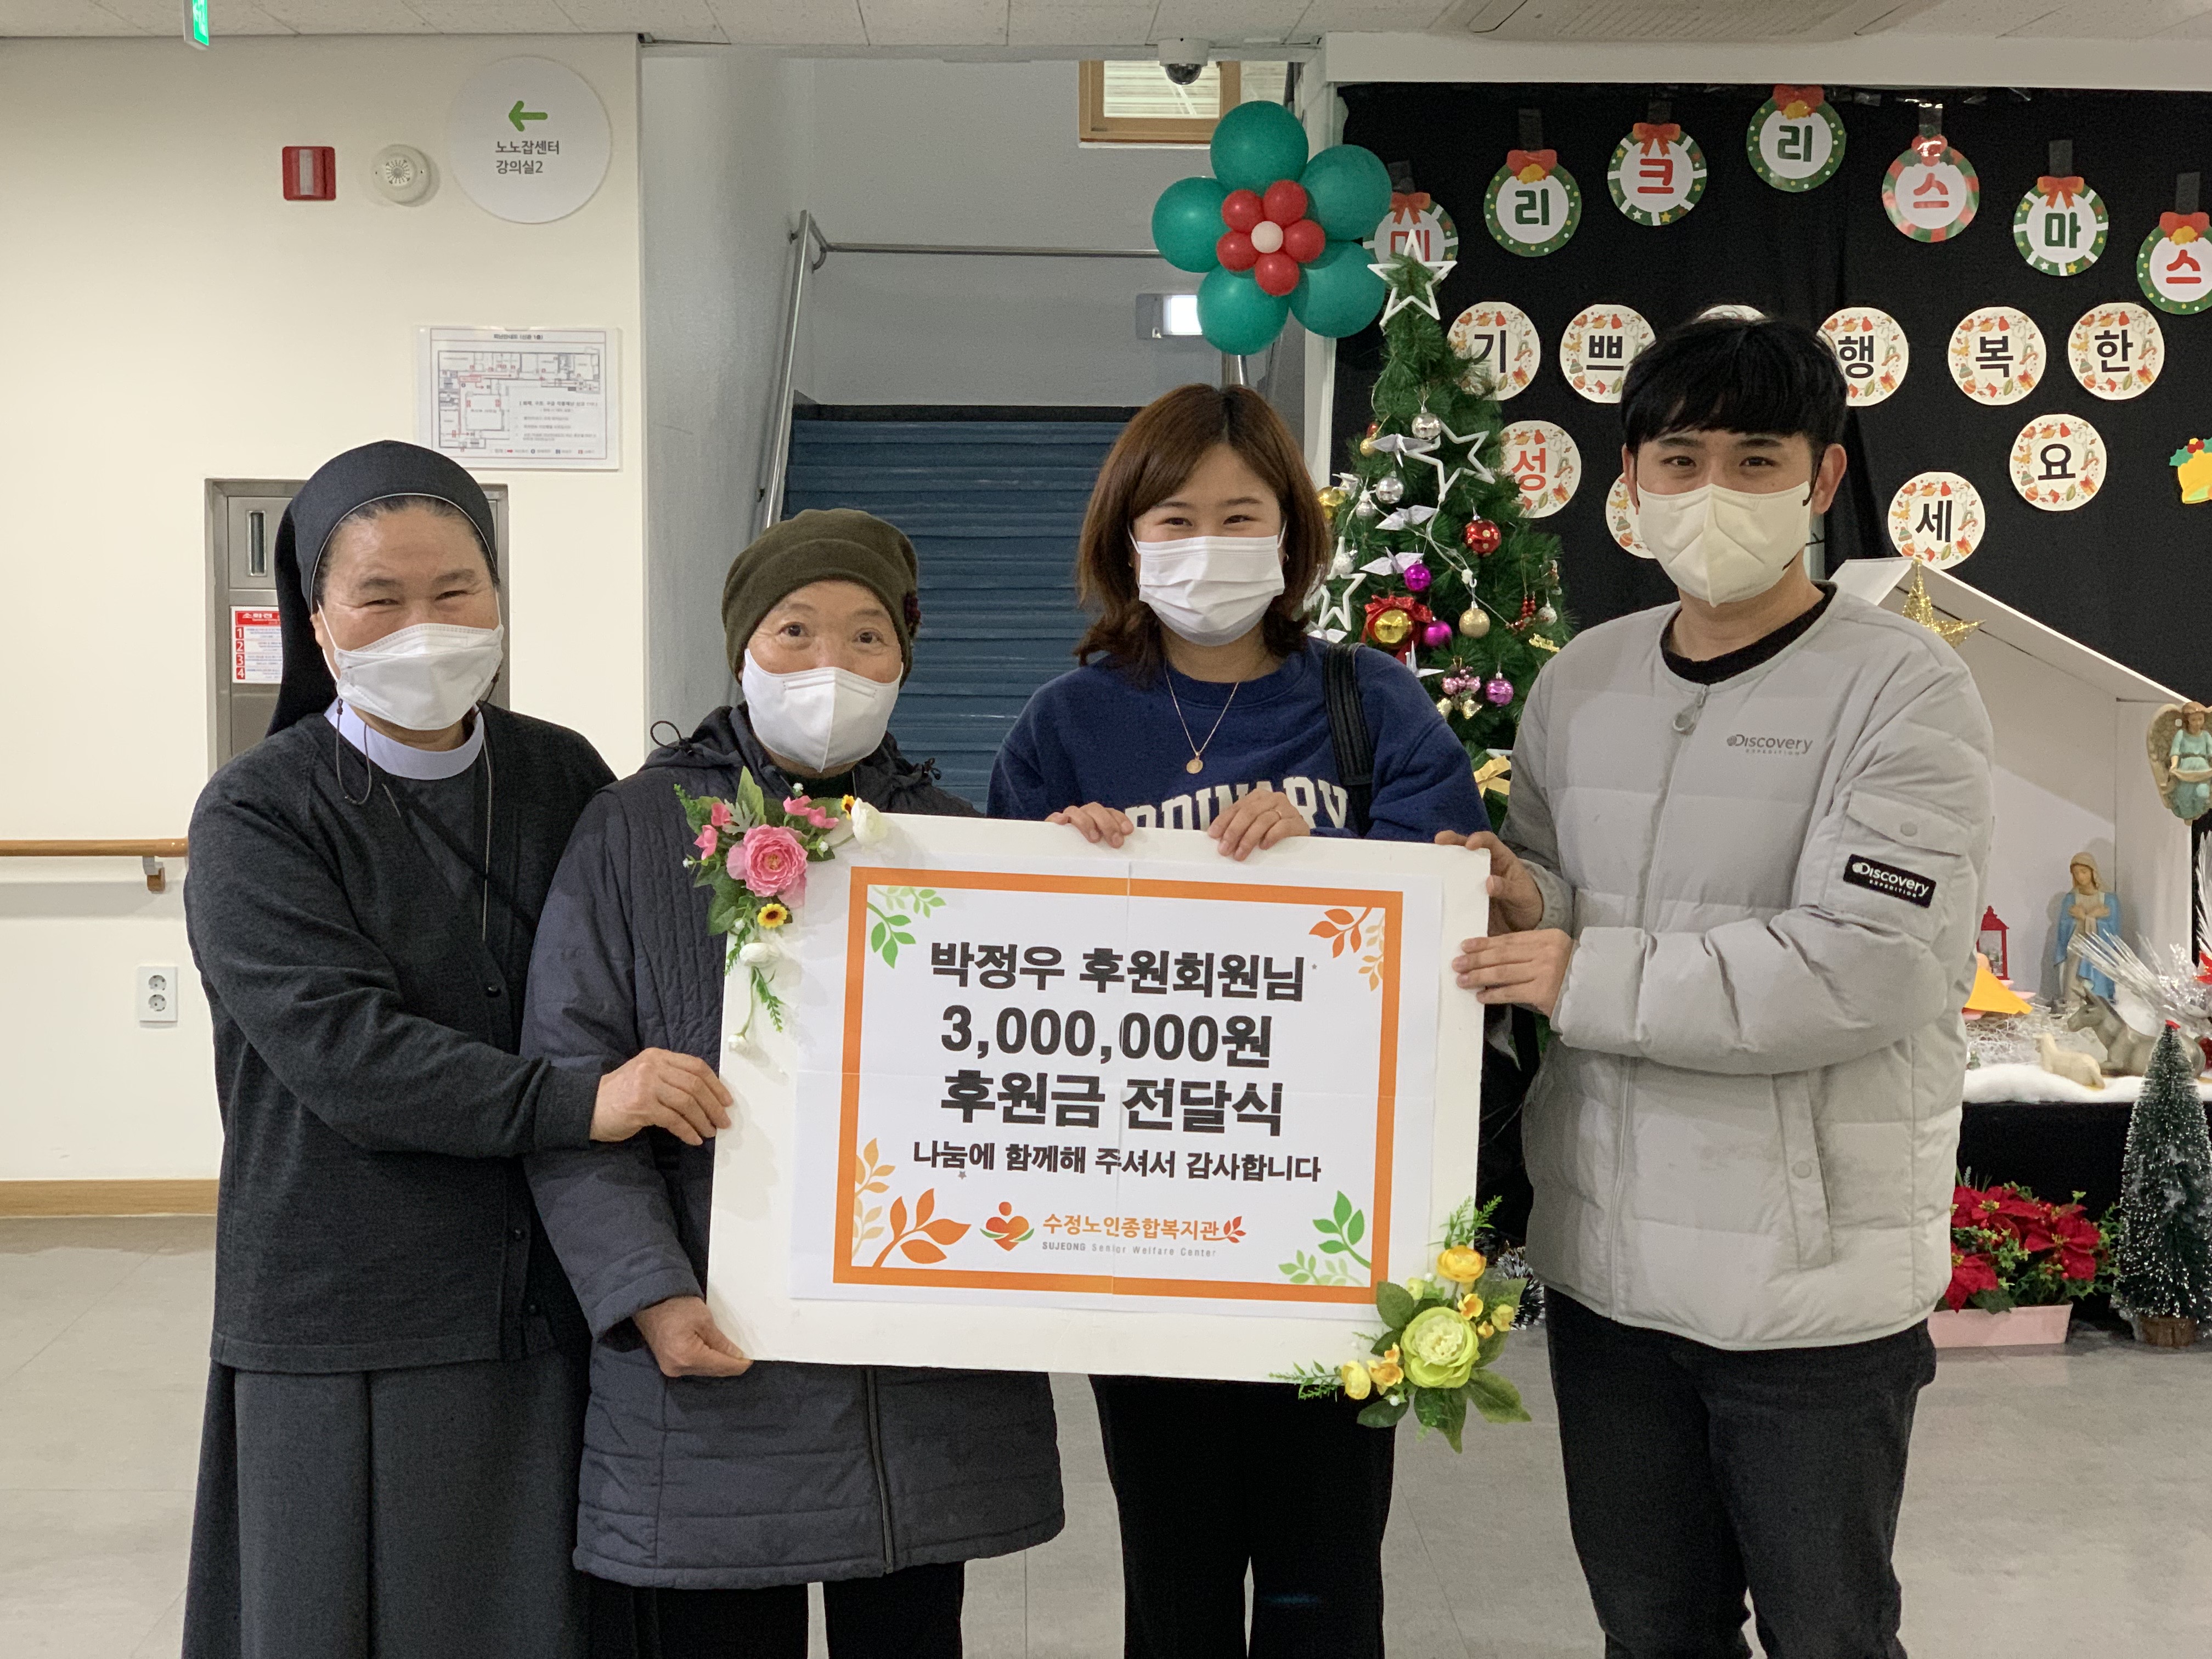 박정우 후원회원님께서 후원금 3,000,000원을 후원해주셨습니다!